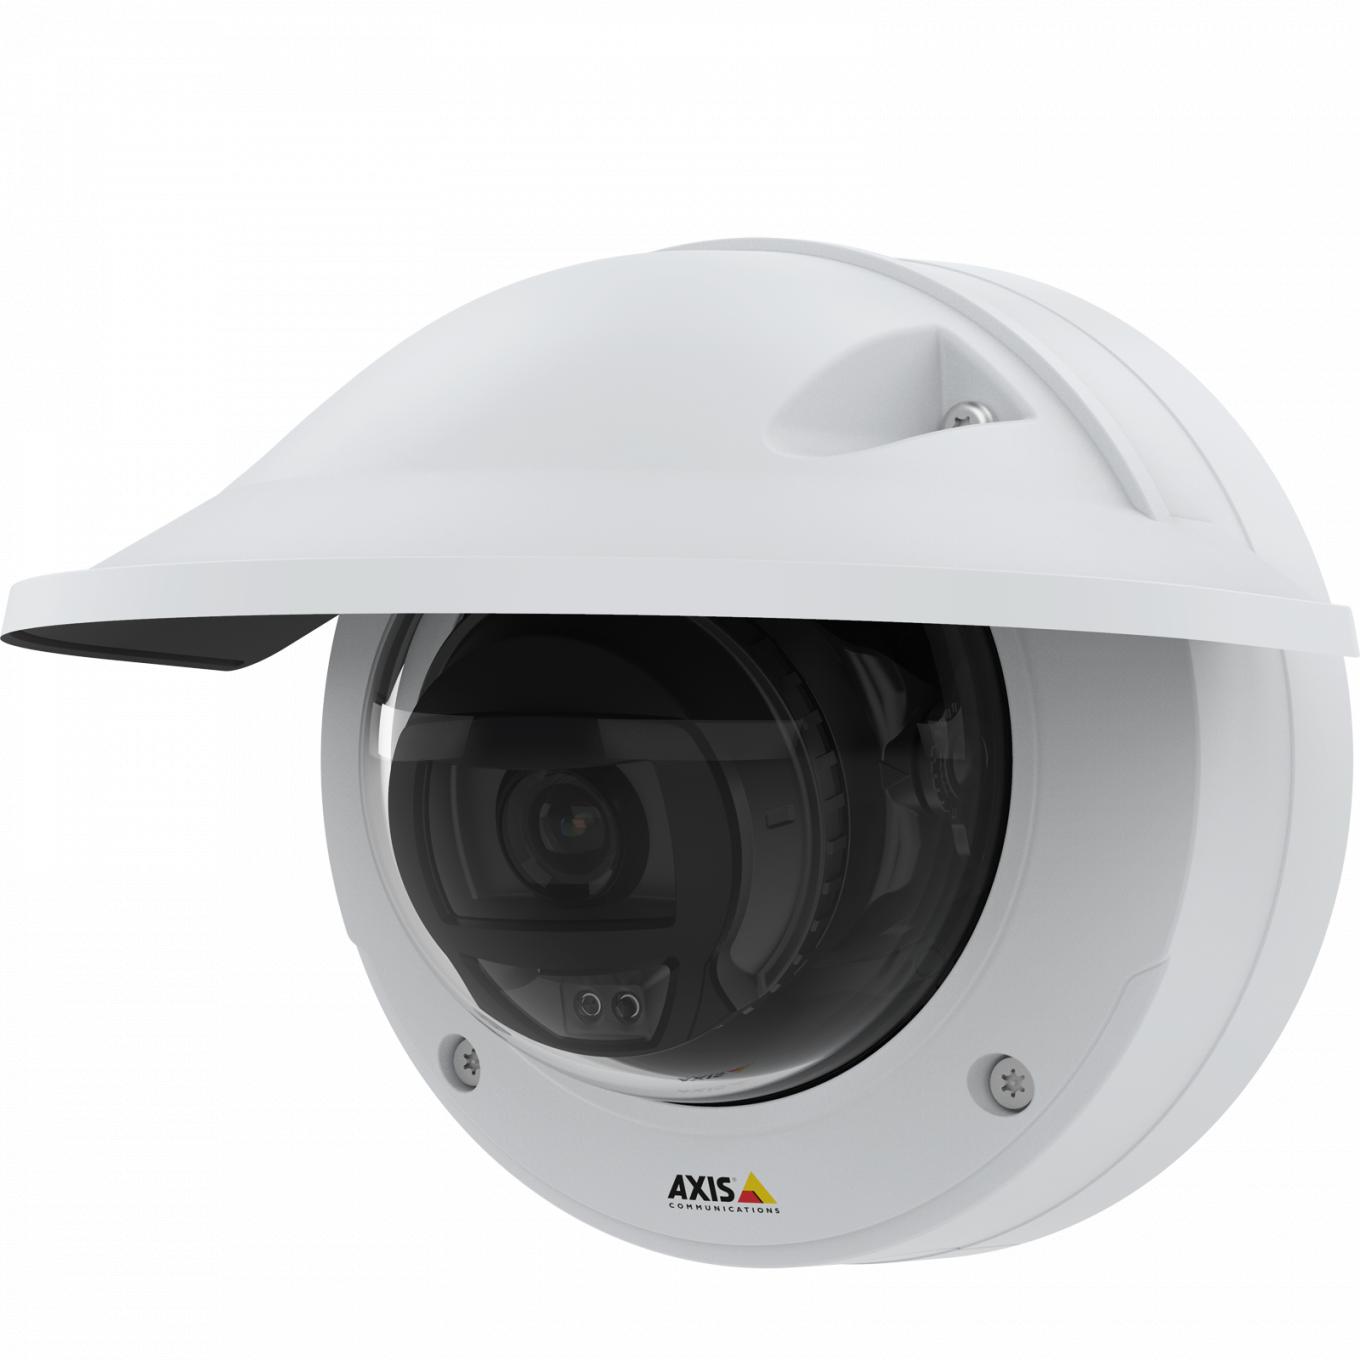 Kamera IP Camera AXIS p3245 lve ma jakość wideo HDTV 1080p. Widok kamery z osłoną chroniącą przed wpływem warunków atmosferycznych z lewej strony.